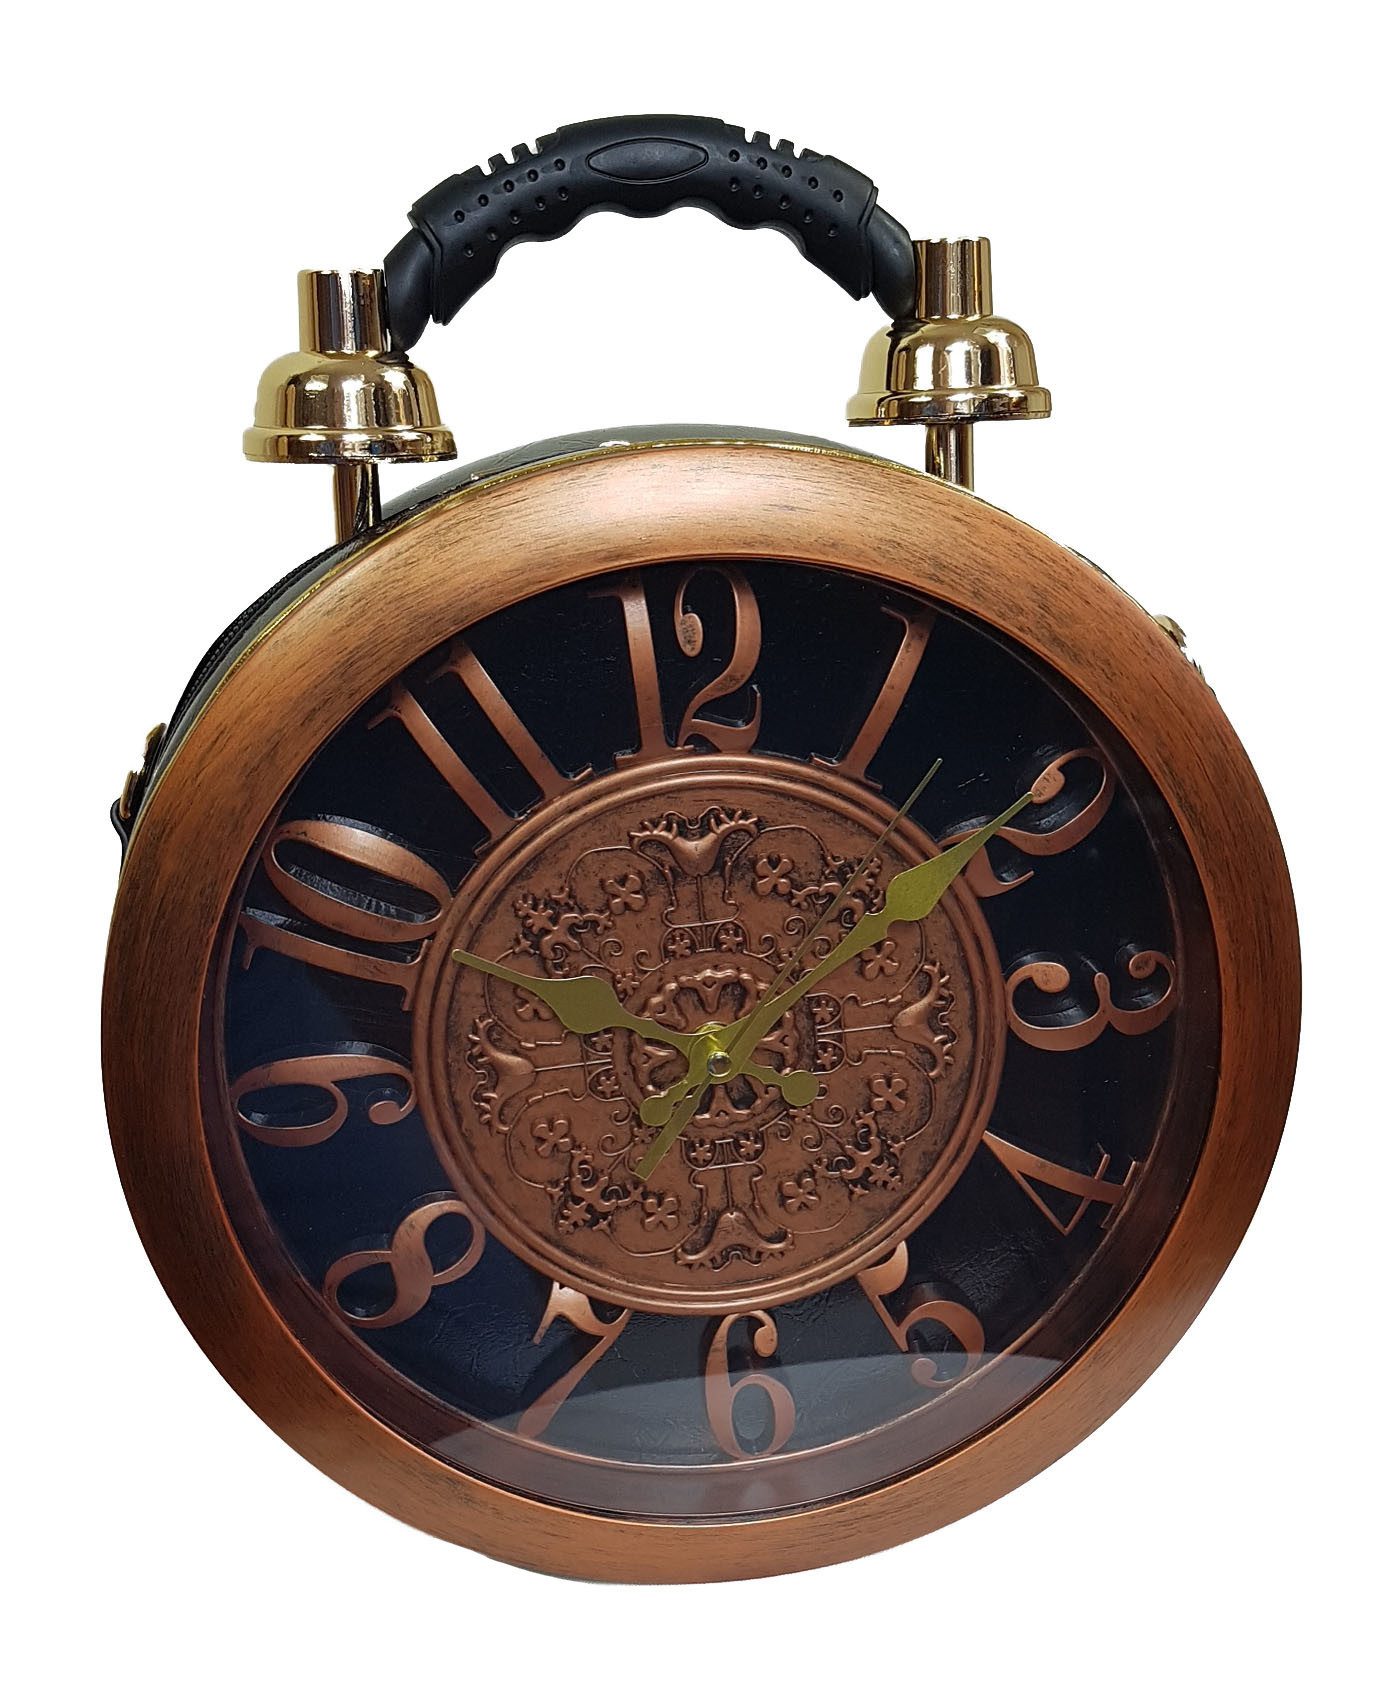 Einkaufszauber Handtasche Designer Handtasche mit echter Uhr Schwarz-Kupfer, Echte Uhr an der Vorderseite